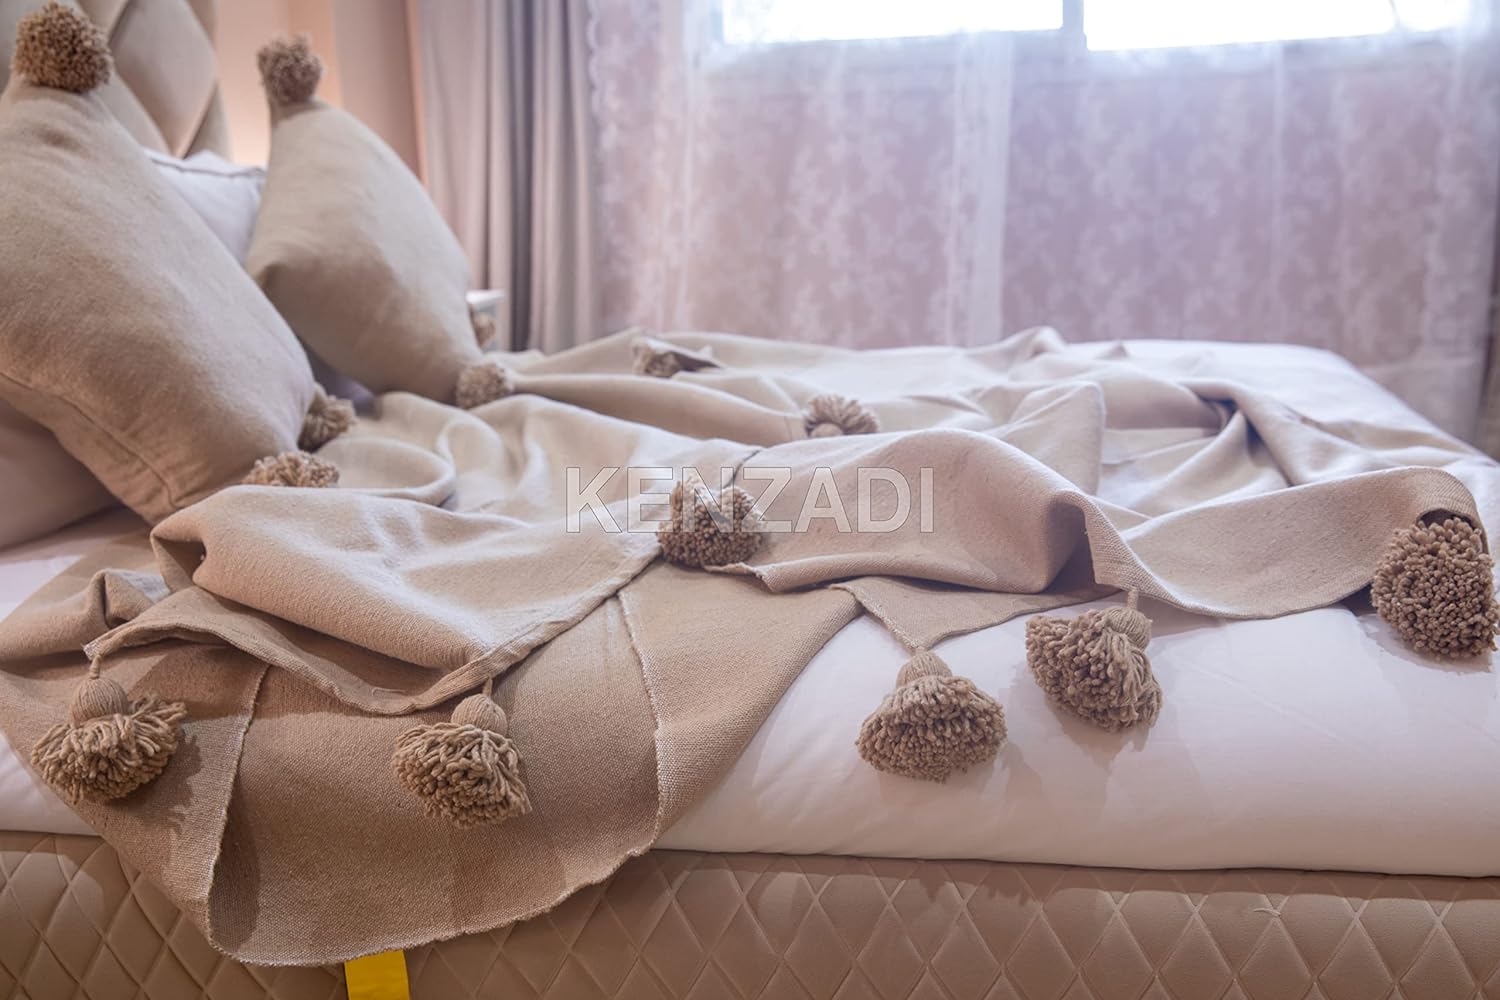 KENZADI Moroccan Handmade Pompom Blanket, Throw Blanket, Pom Pom Blanket, Boho Blanket, Bed Cover, Warm Blanket, Cozy Blanket (Brown with pom Brown, Queen (U.S. Standard)) - Handmade by My Poufs